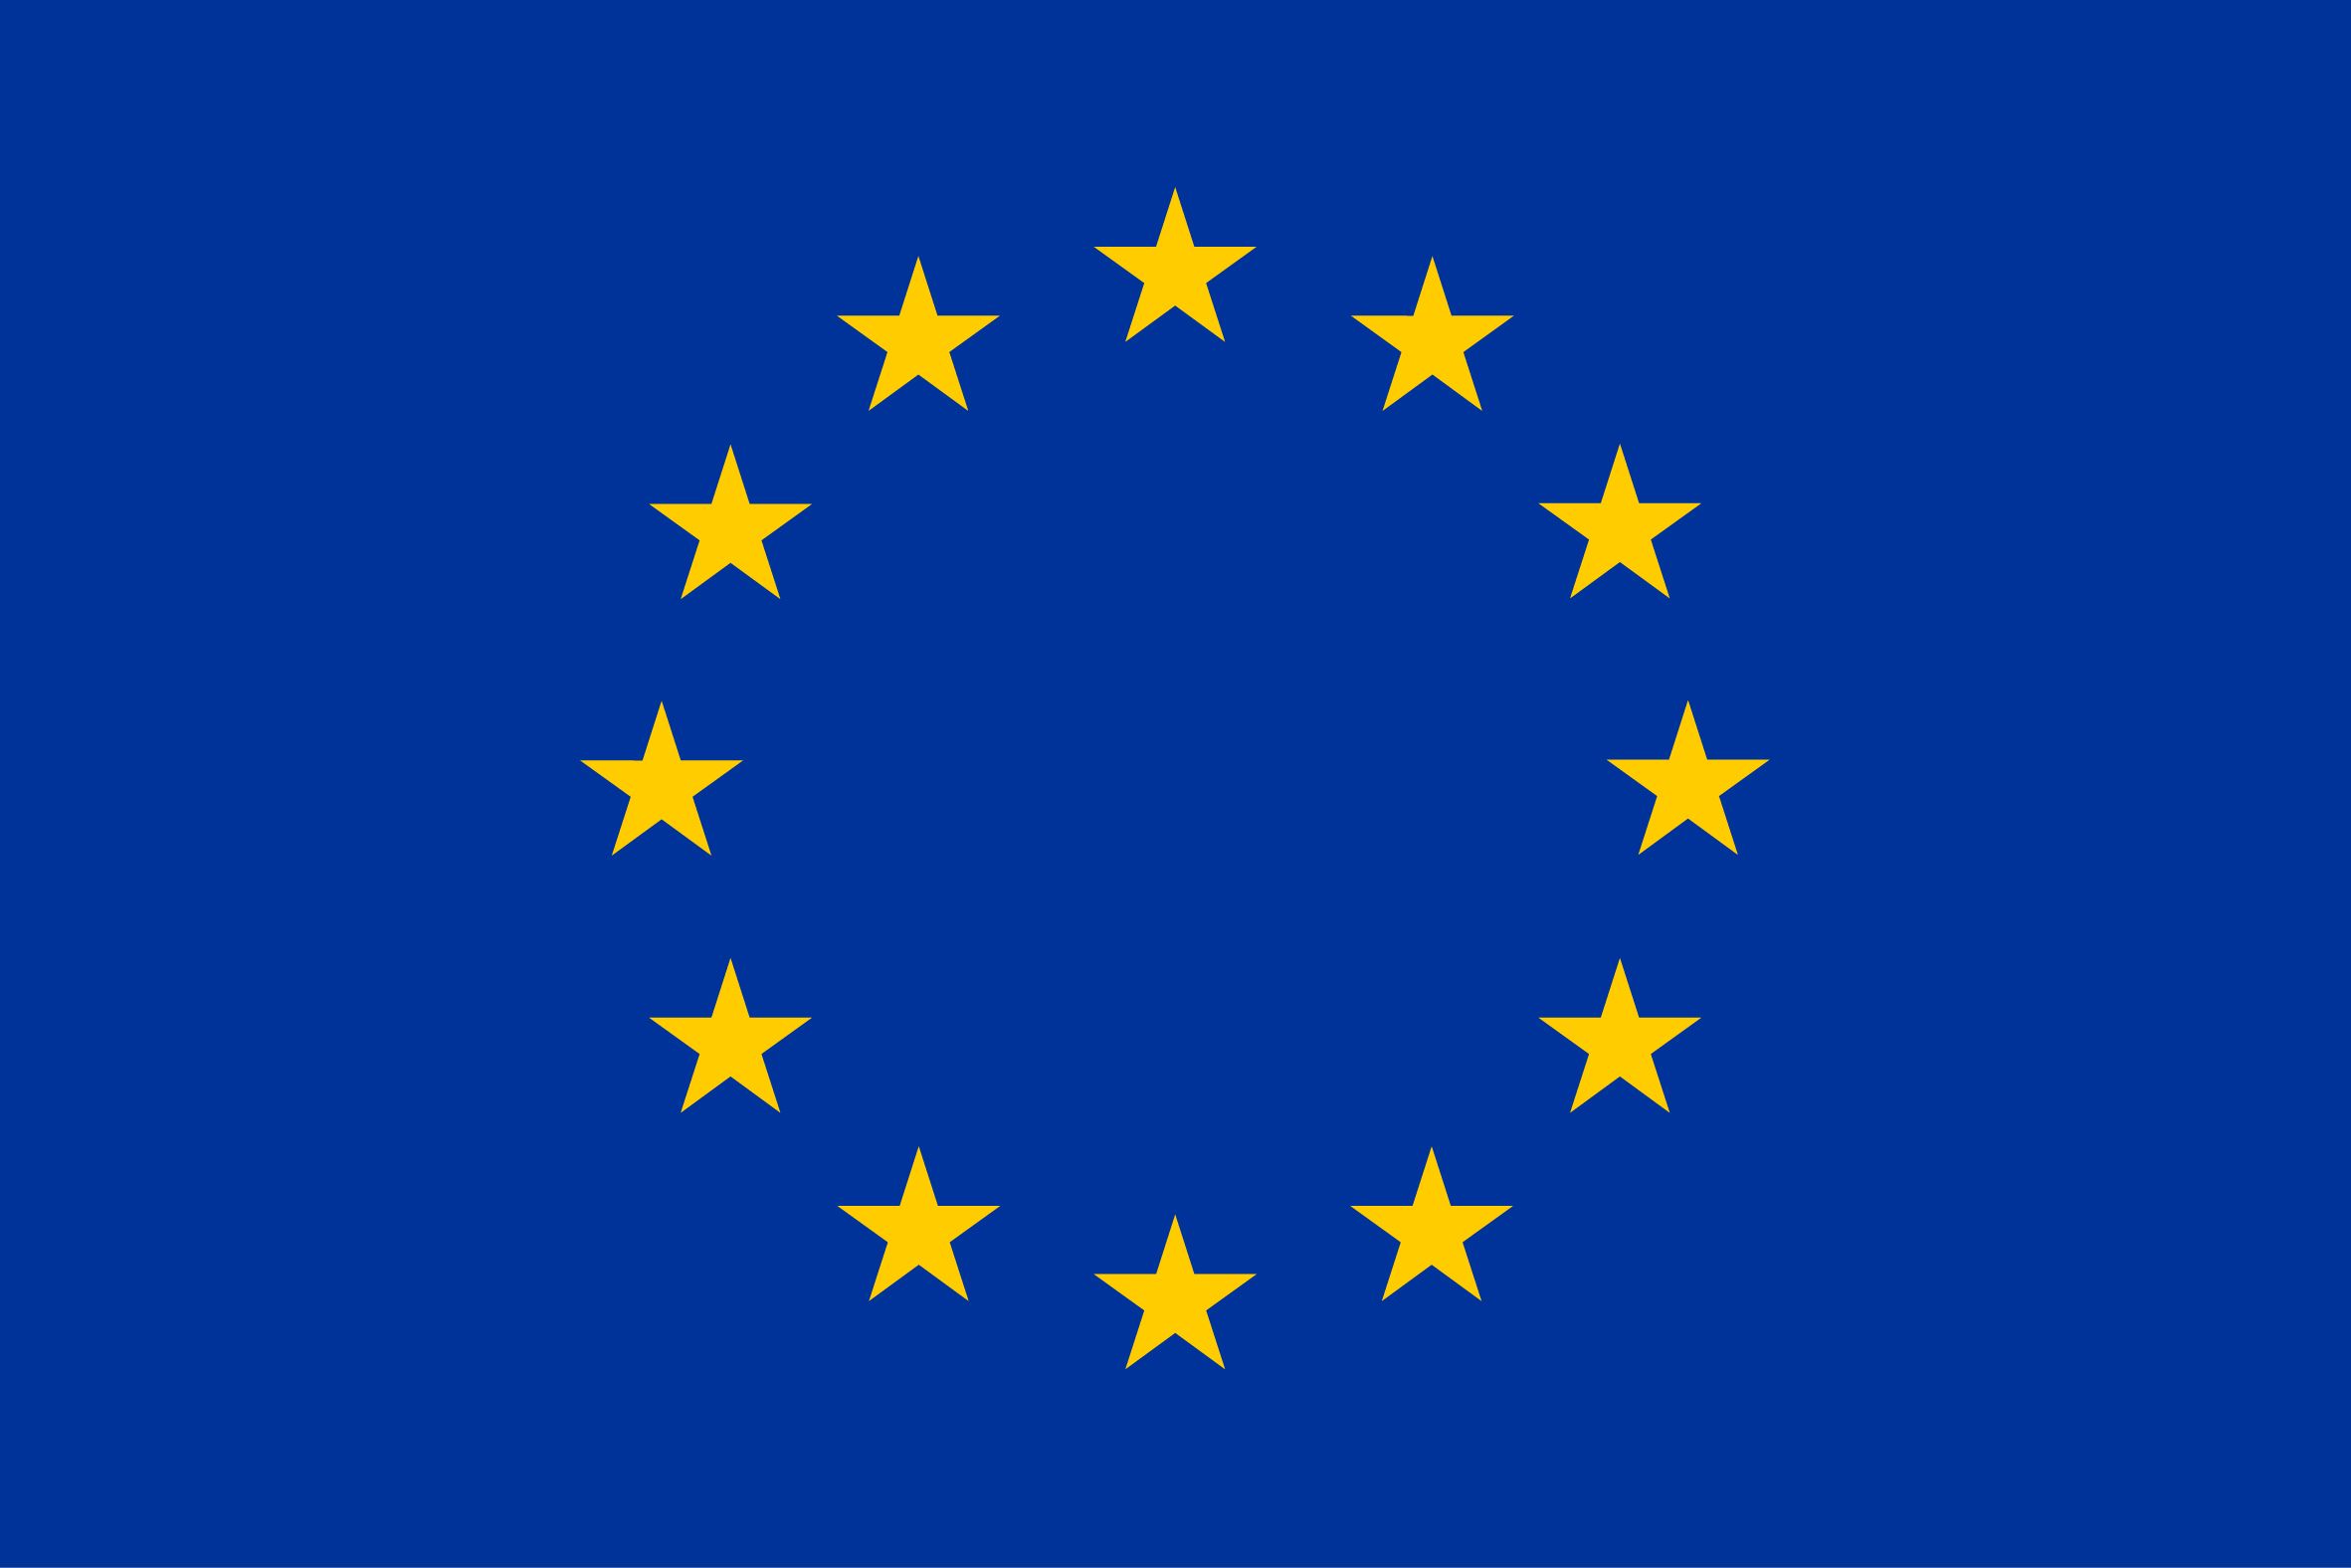 Illustration - EU flag - European Union